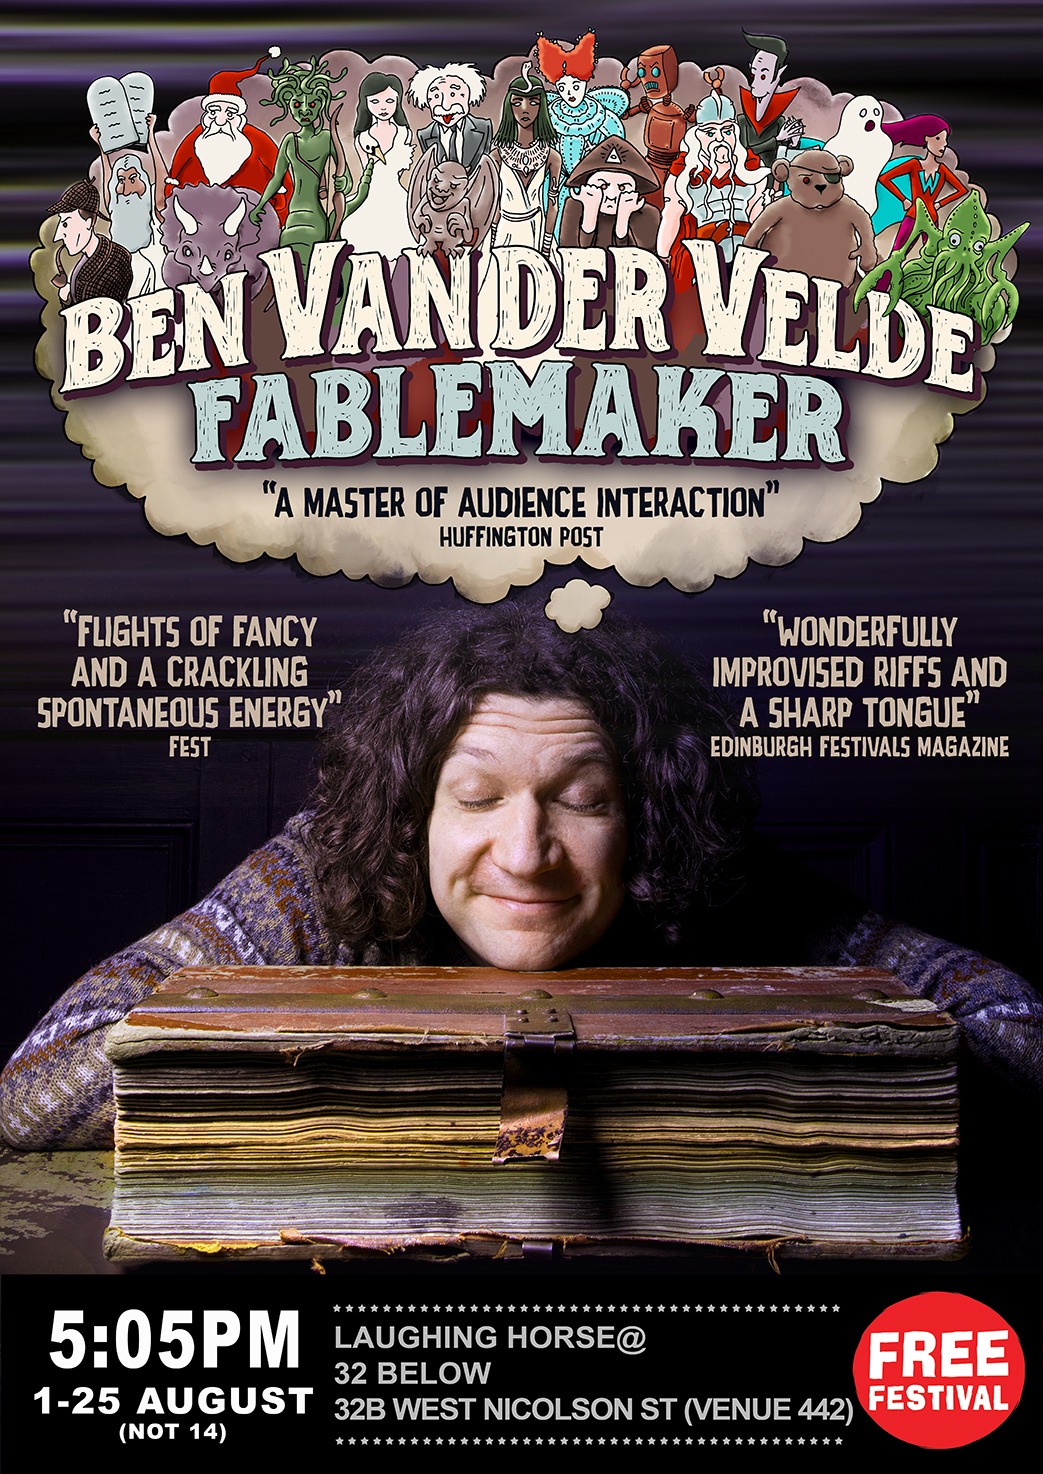 The poster for Ben Van der Velde - Fablemaker